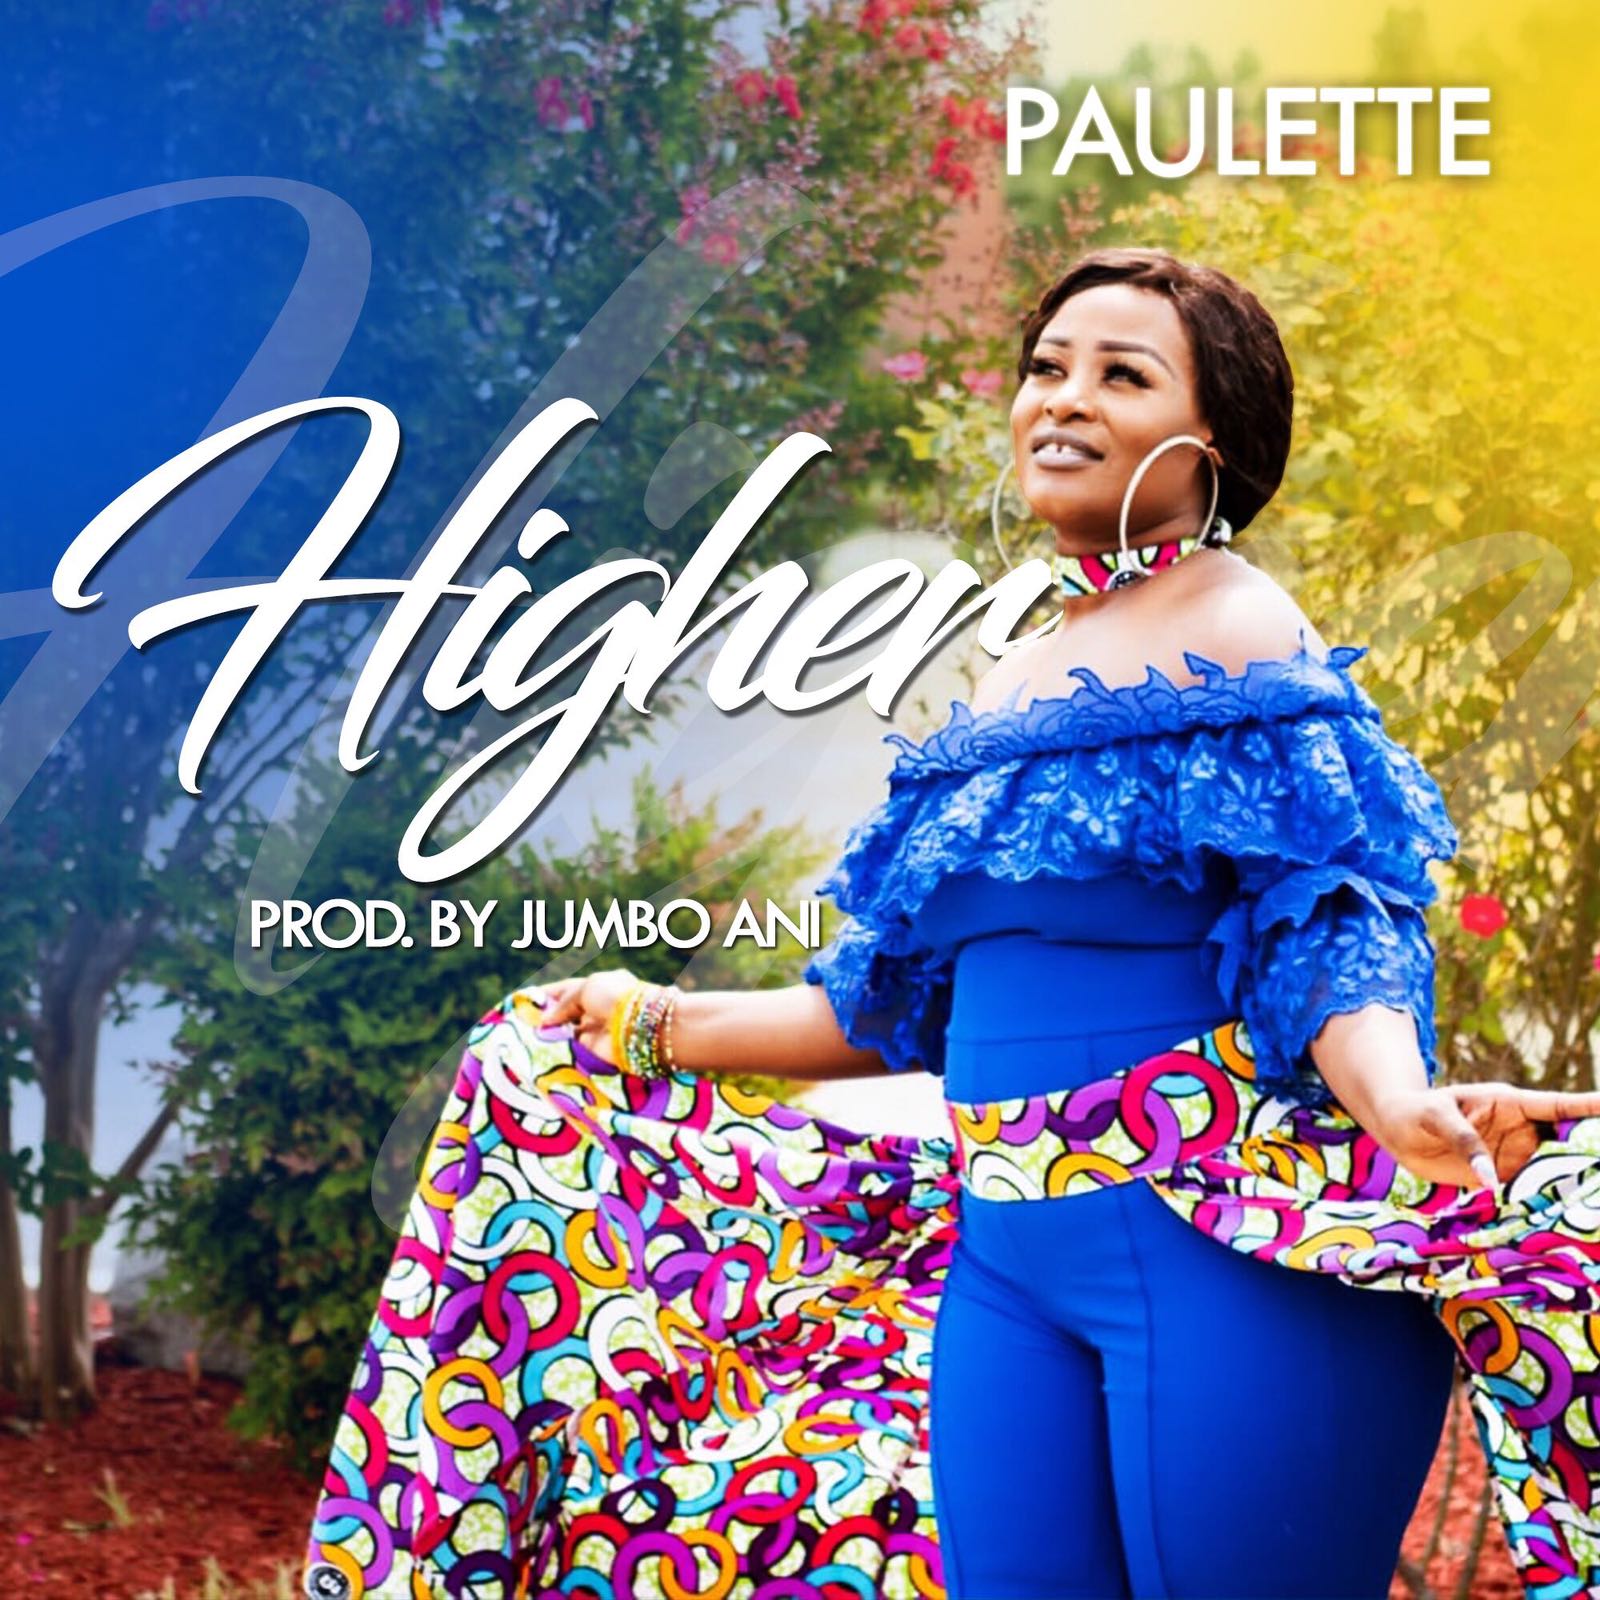 Paulette - Higher [Art cover] (1)